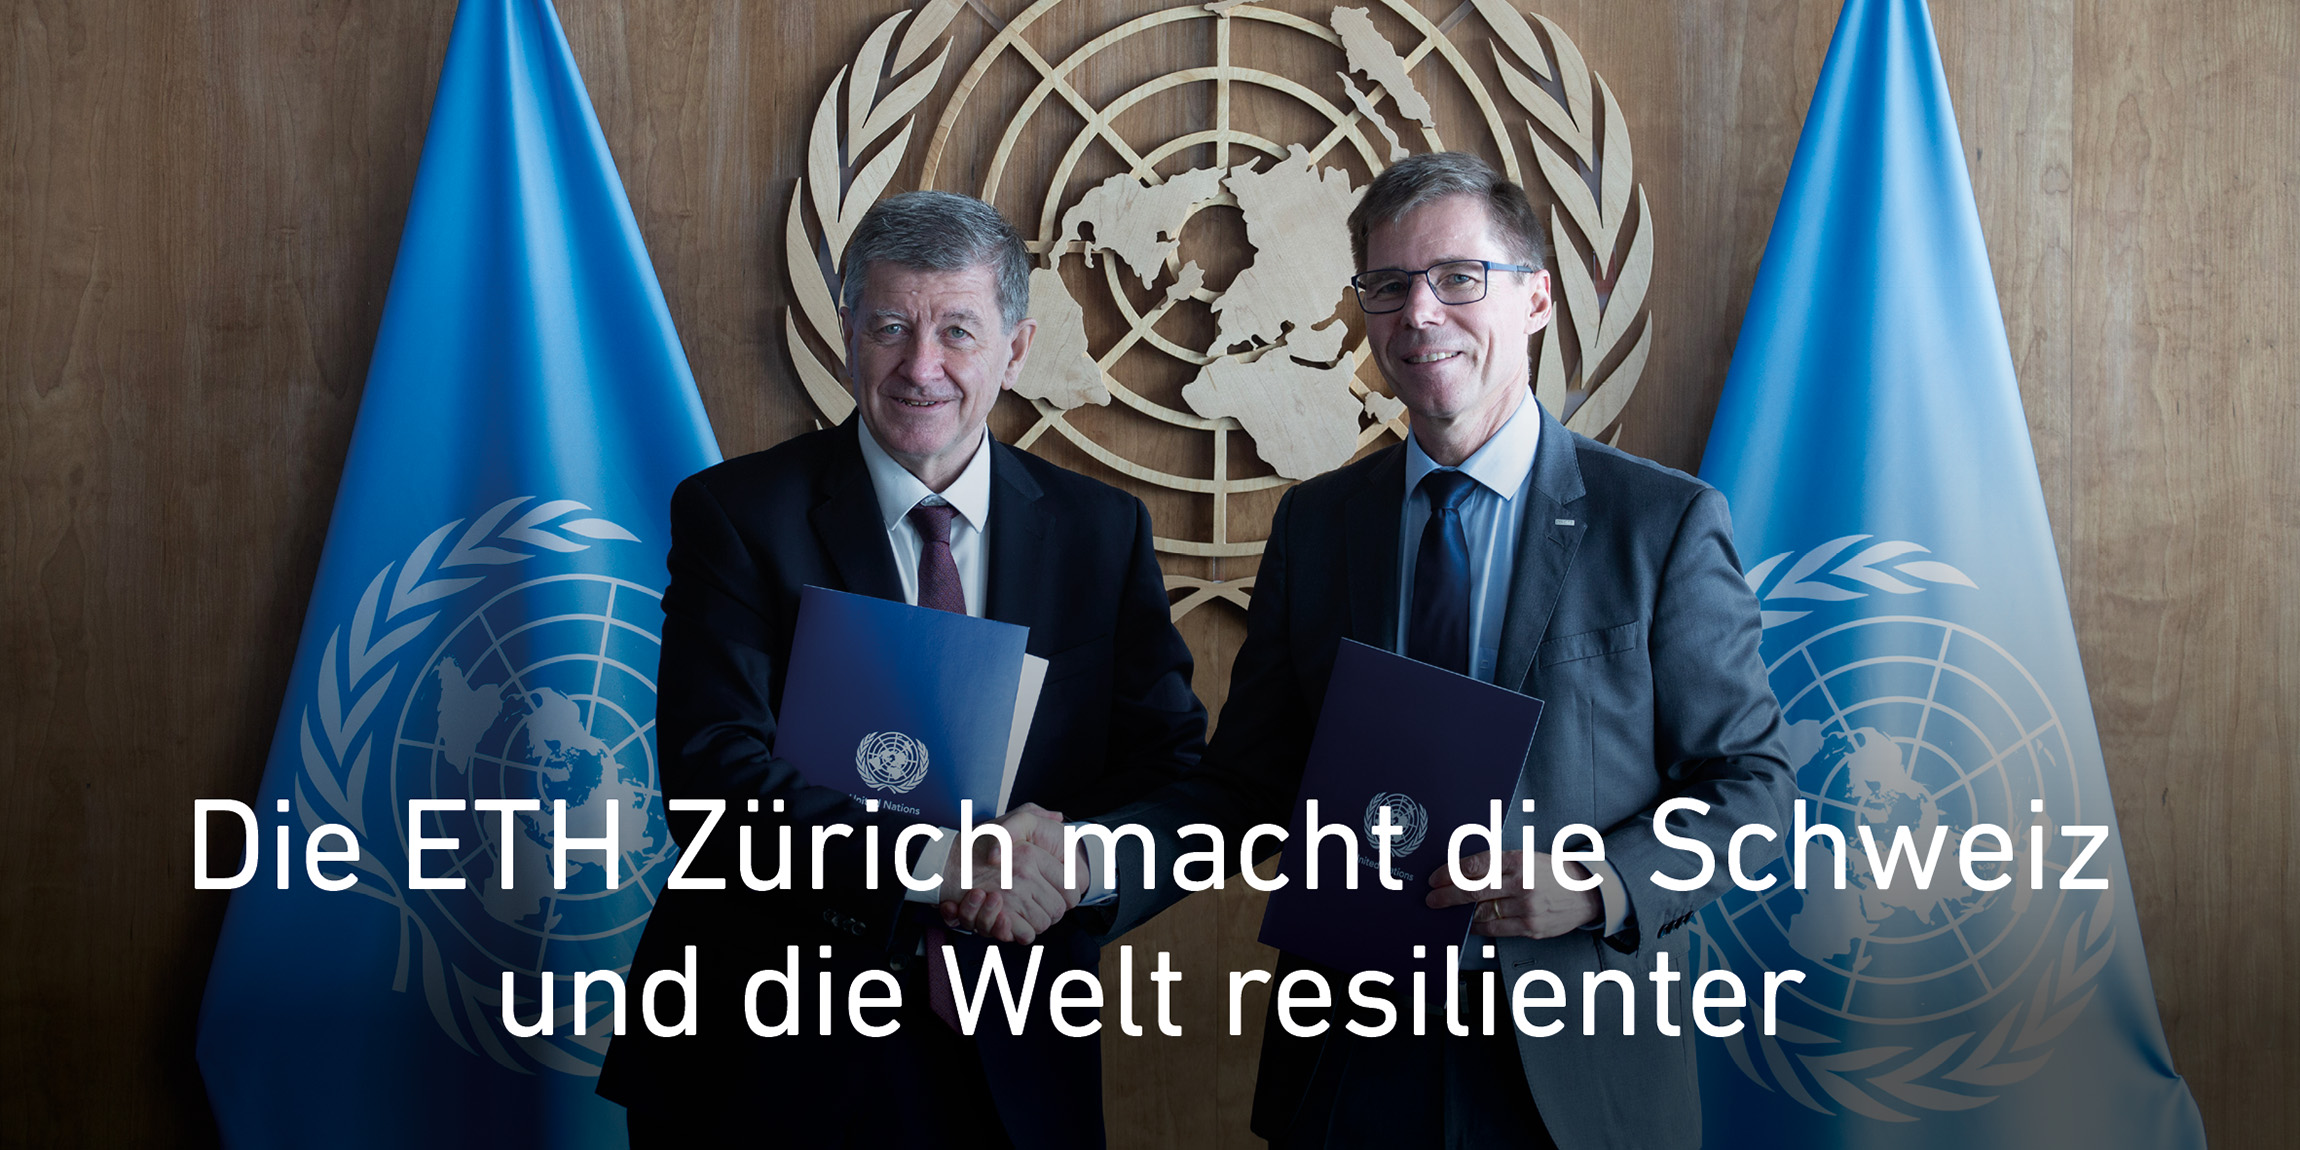 Zwei Männer stehen vor dem UNO Logo und zwei UNO Flaggen und schütteln sich die Hände. Text: Die ETH Zürich macht die Schweiz und die Welt resilienter. Link zu News Artikel.